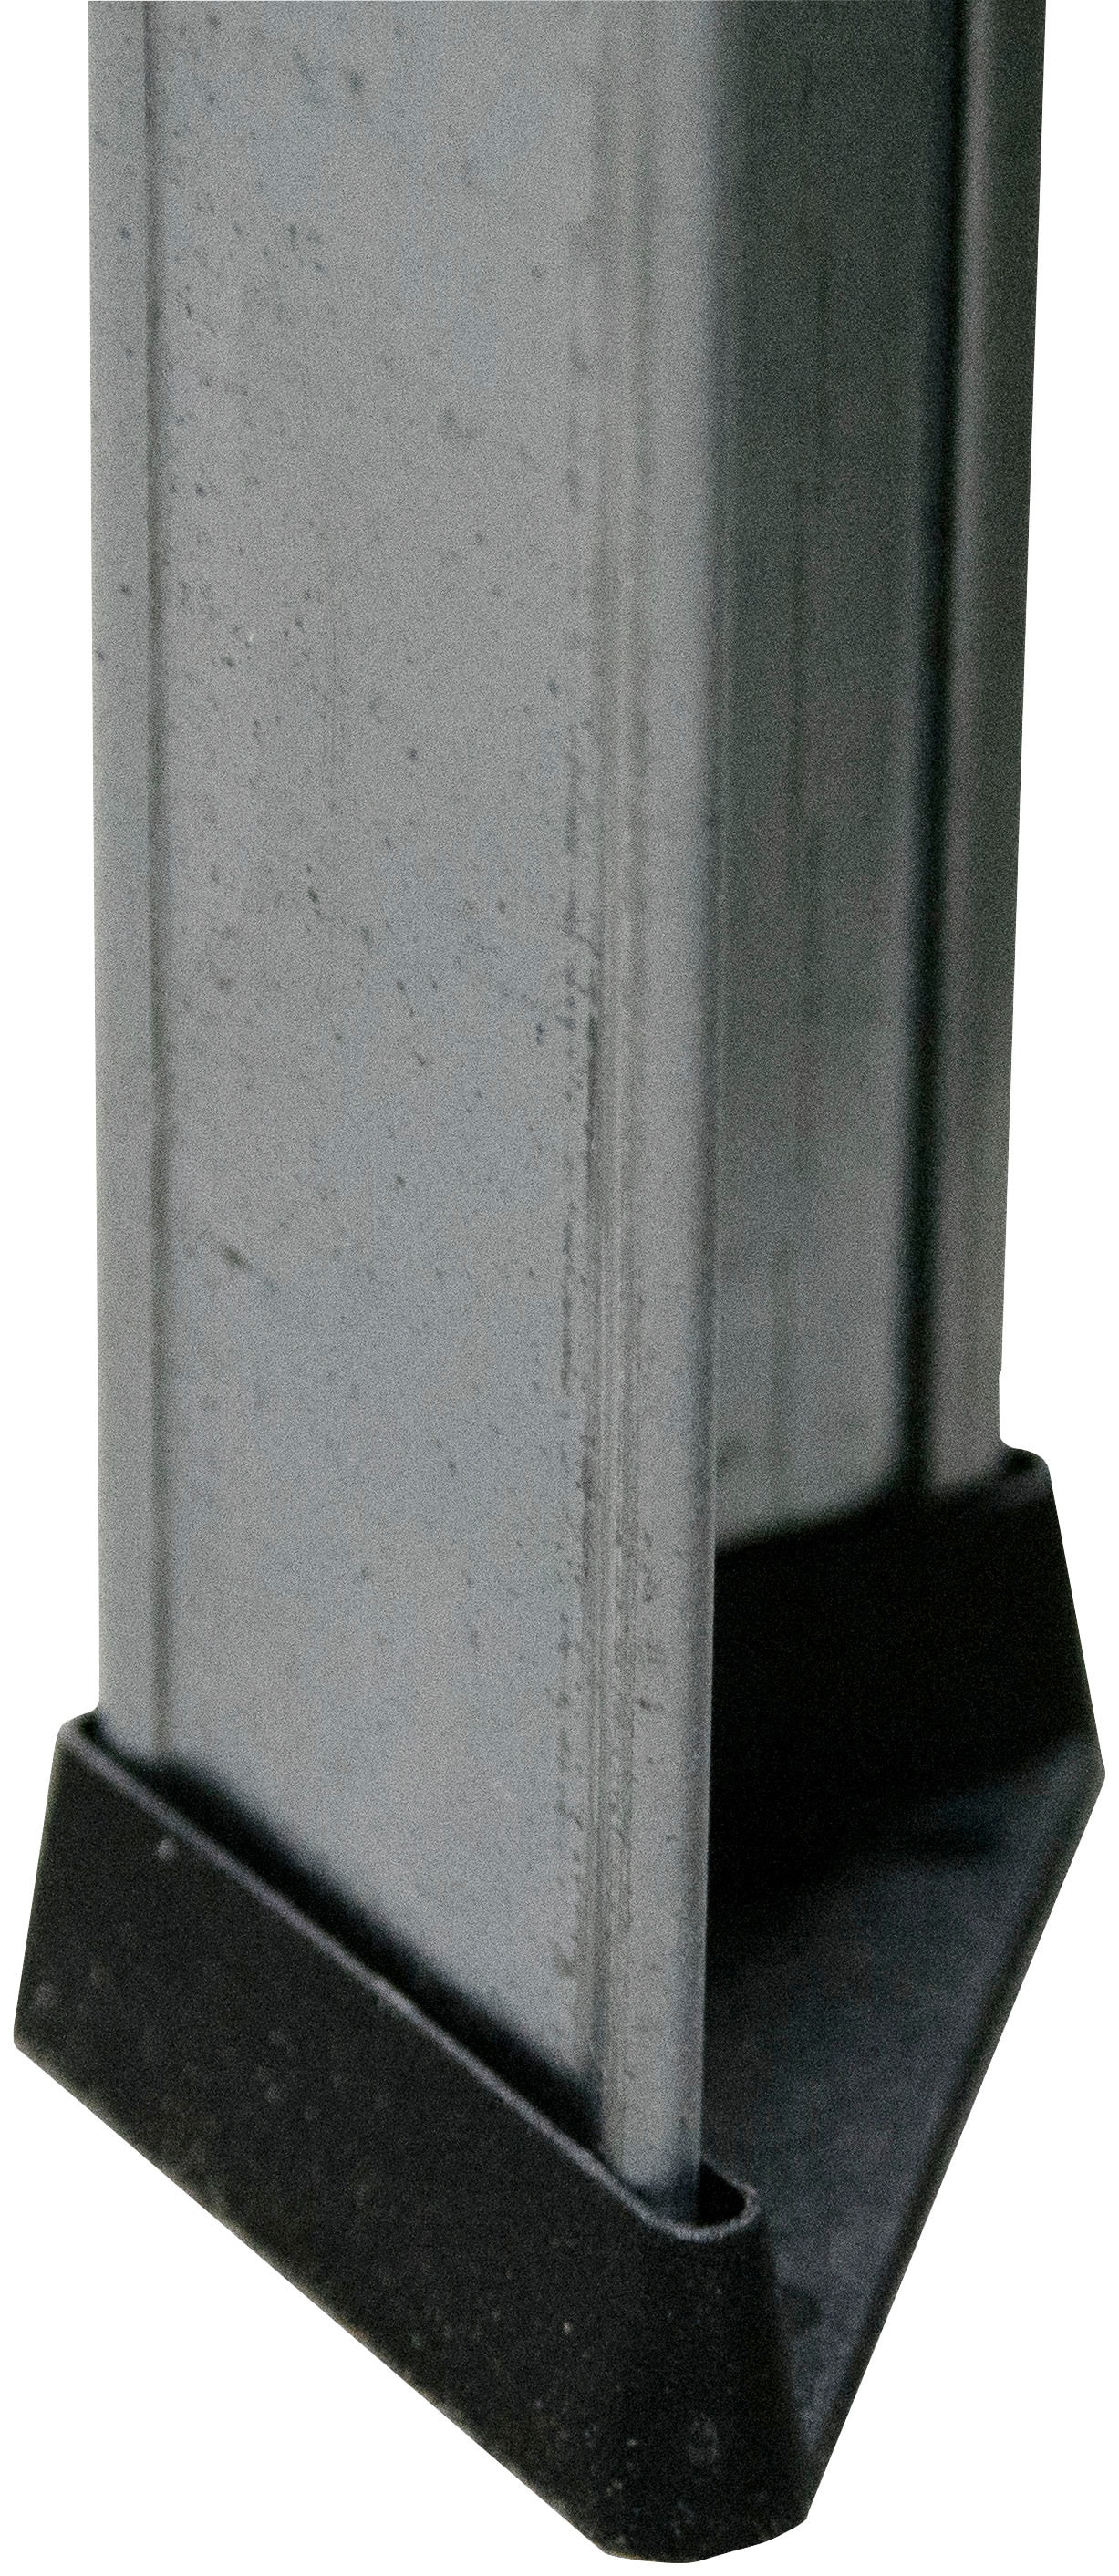 SCHULTE Regalwelt Schwerlastregal »Steck Weitspann/Schwerlastregal«, 4 Böden, Höhe: 180cm, in verschiedenen Ausführungen erhältlich